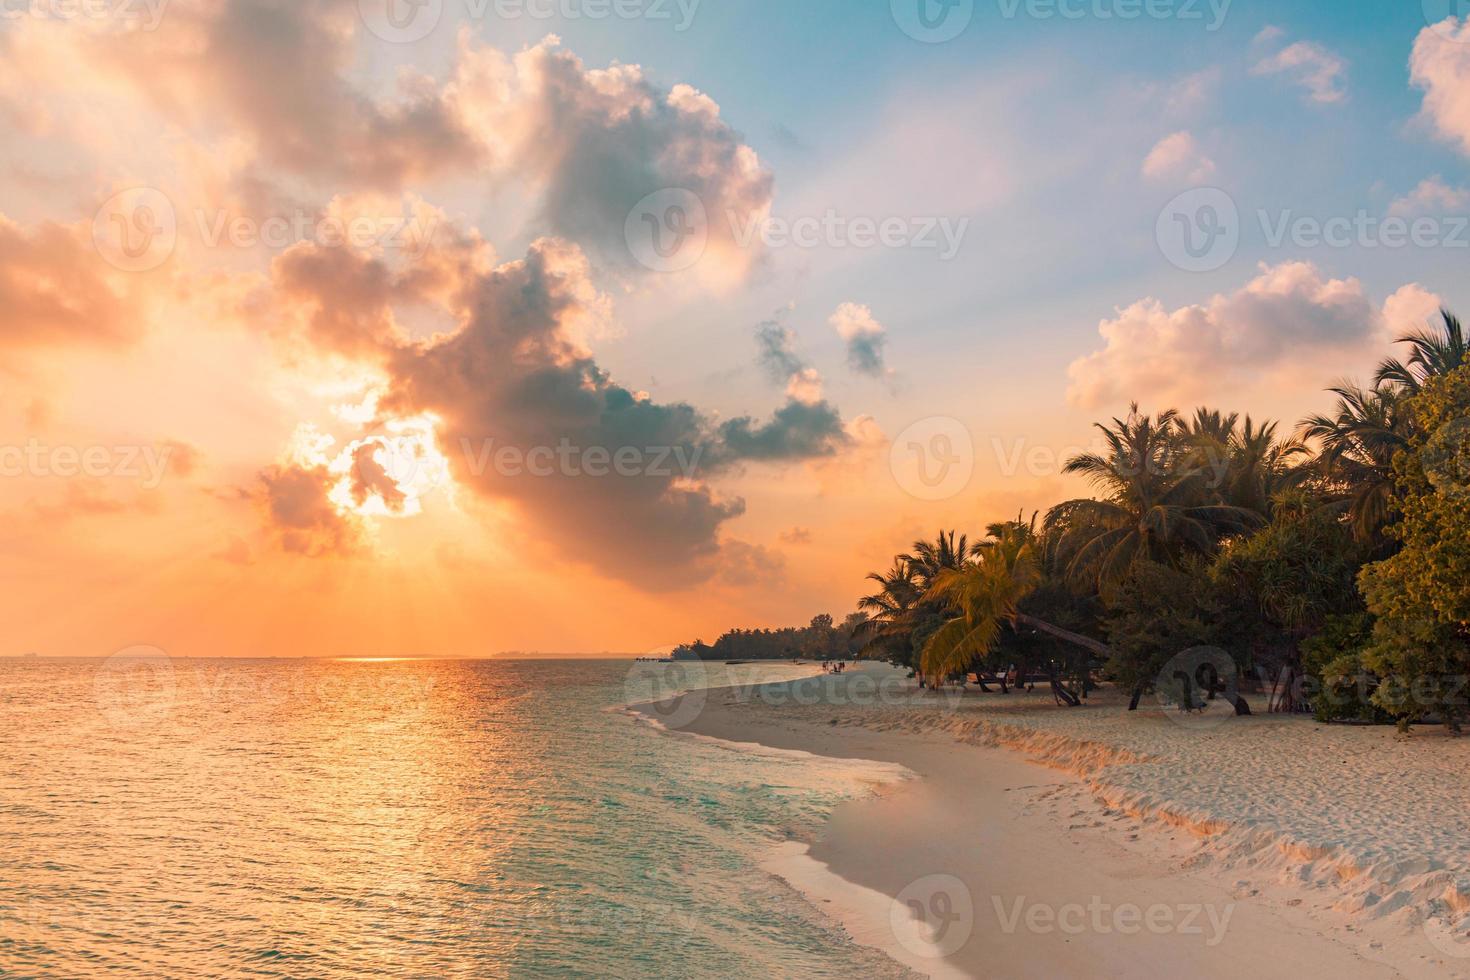 fantastique scène de plage au coucher du soleil. vue colorée sur le ciel et les nuages avec une mer calme et une ambiance tropicale relaxante. rayons de soleil, paysage d'île paradisiaque romantique, silhouette de palmier, soirée de plage incroyable photo